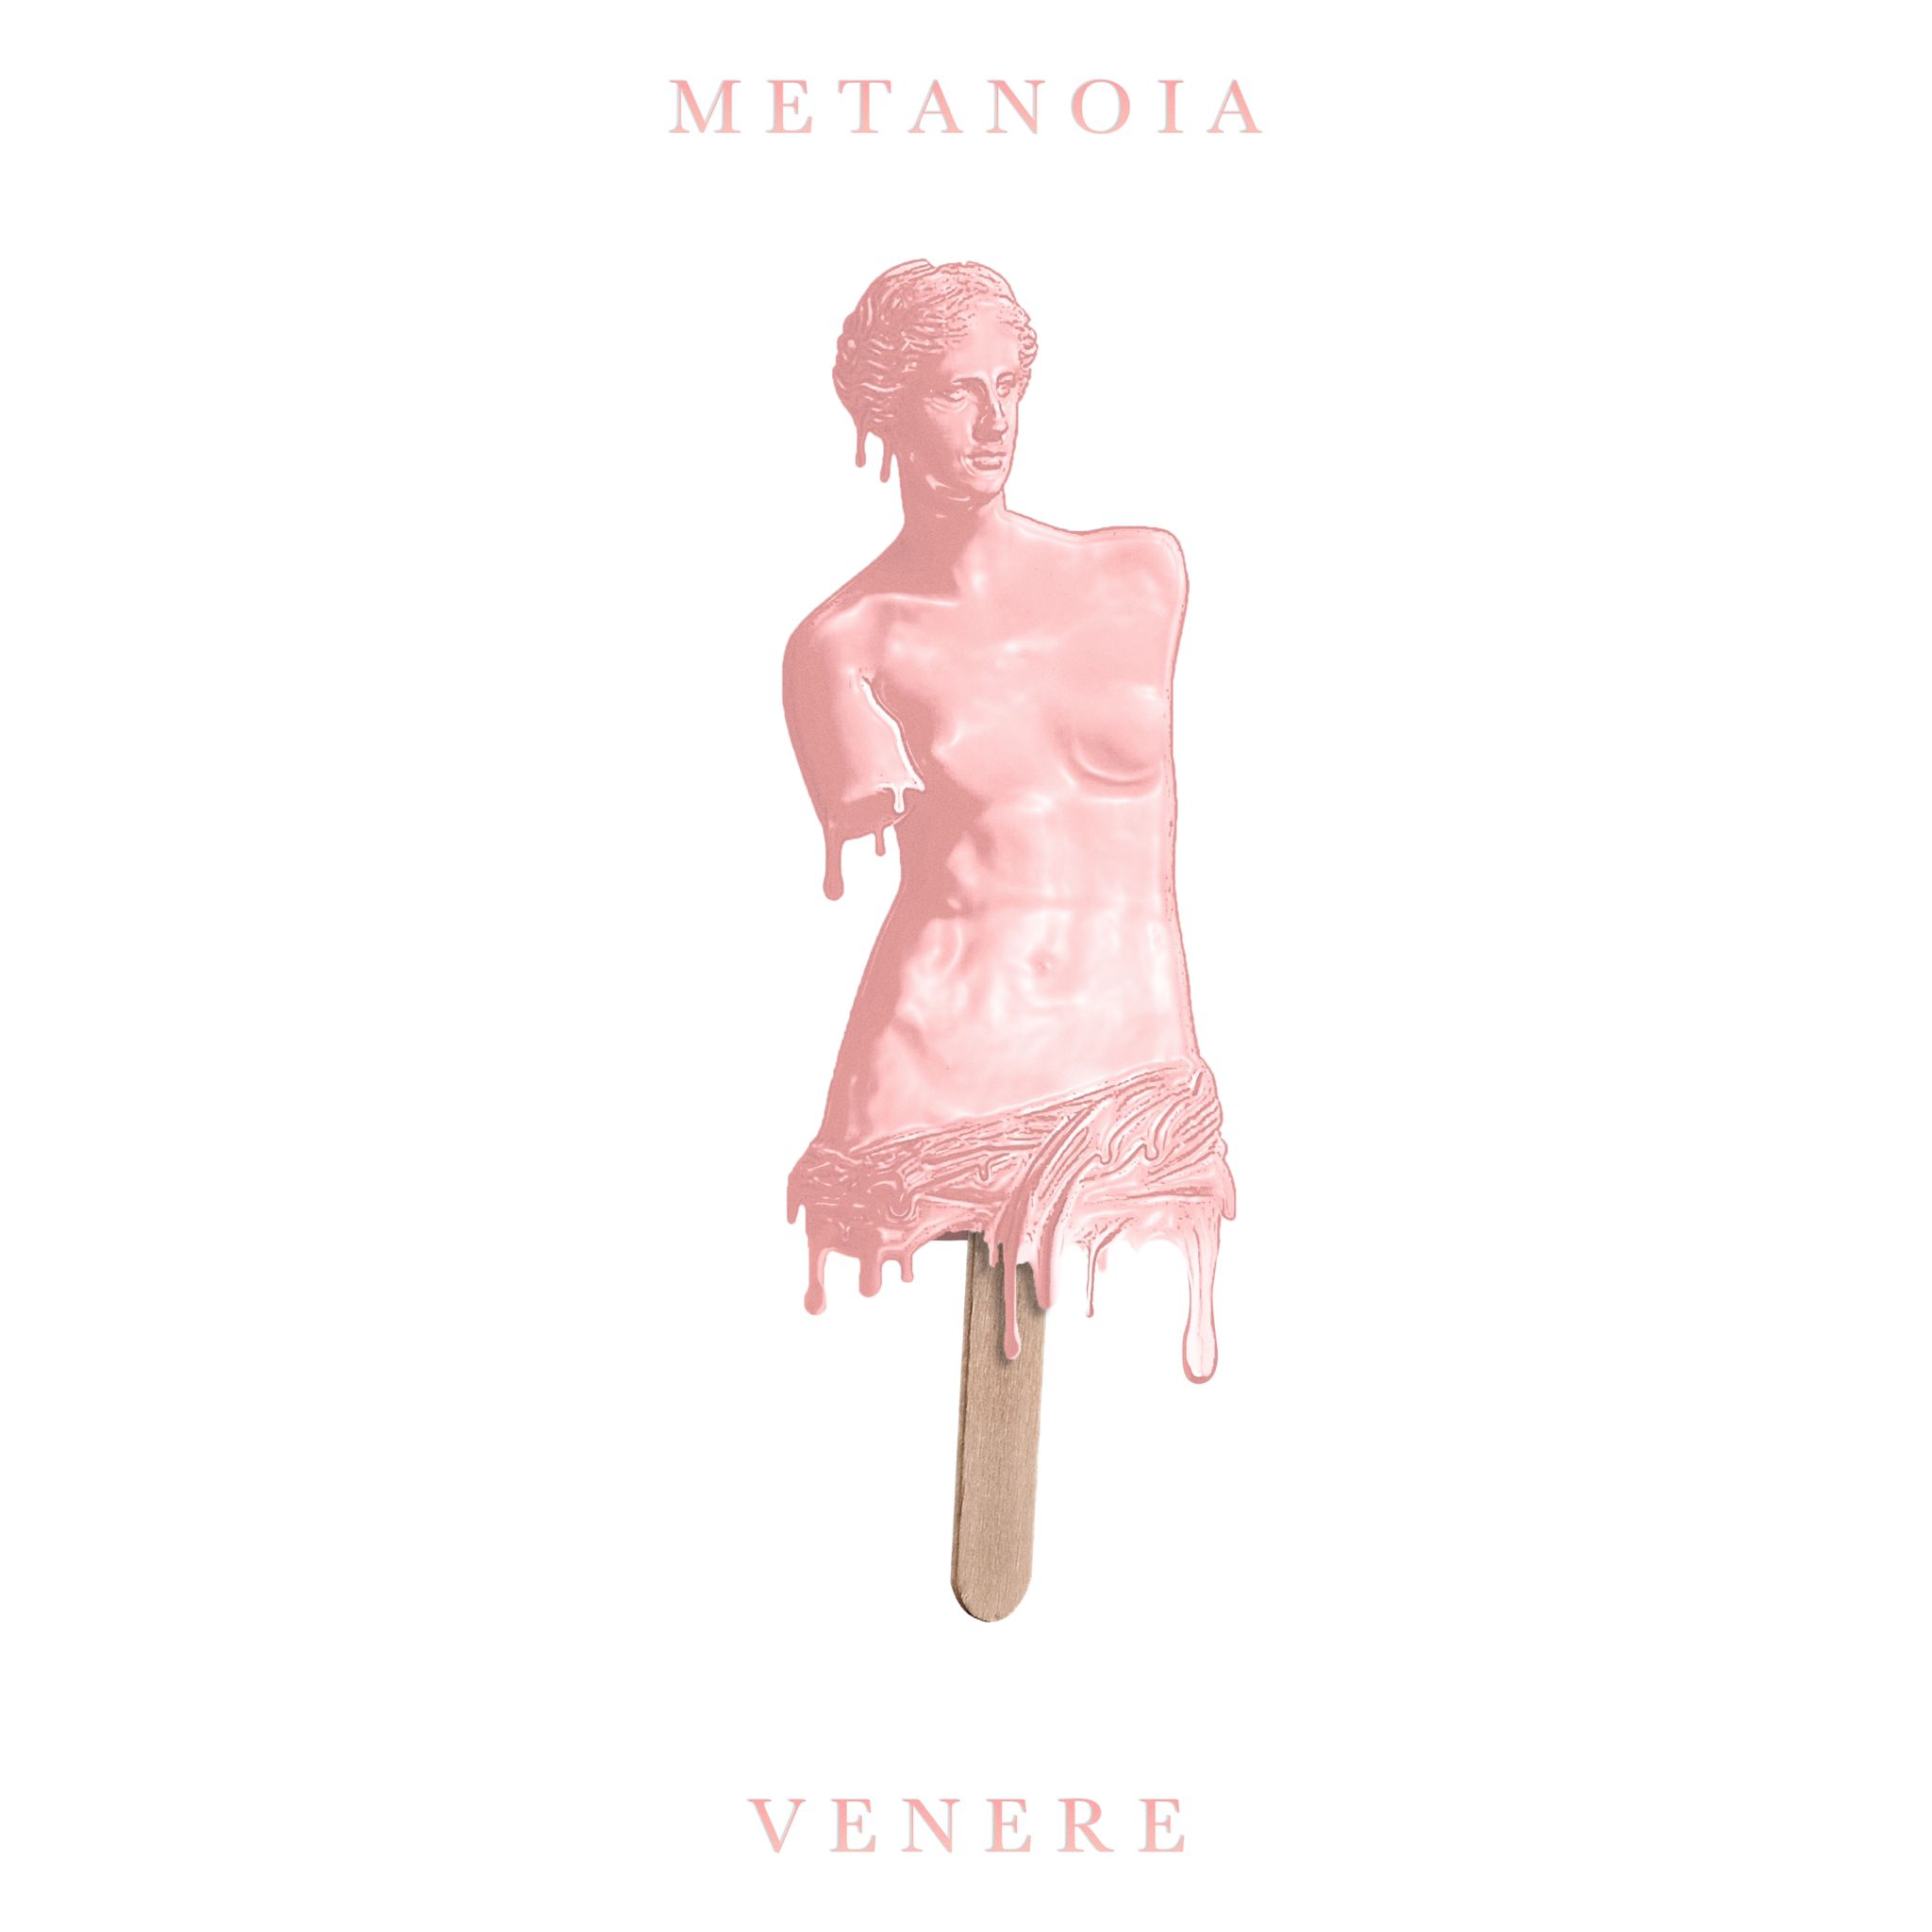 Musica. Venerdì uscirà “Venere”, il nuovo singolo dei “Metanoia”. Ecco il link